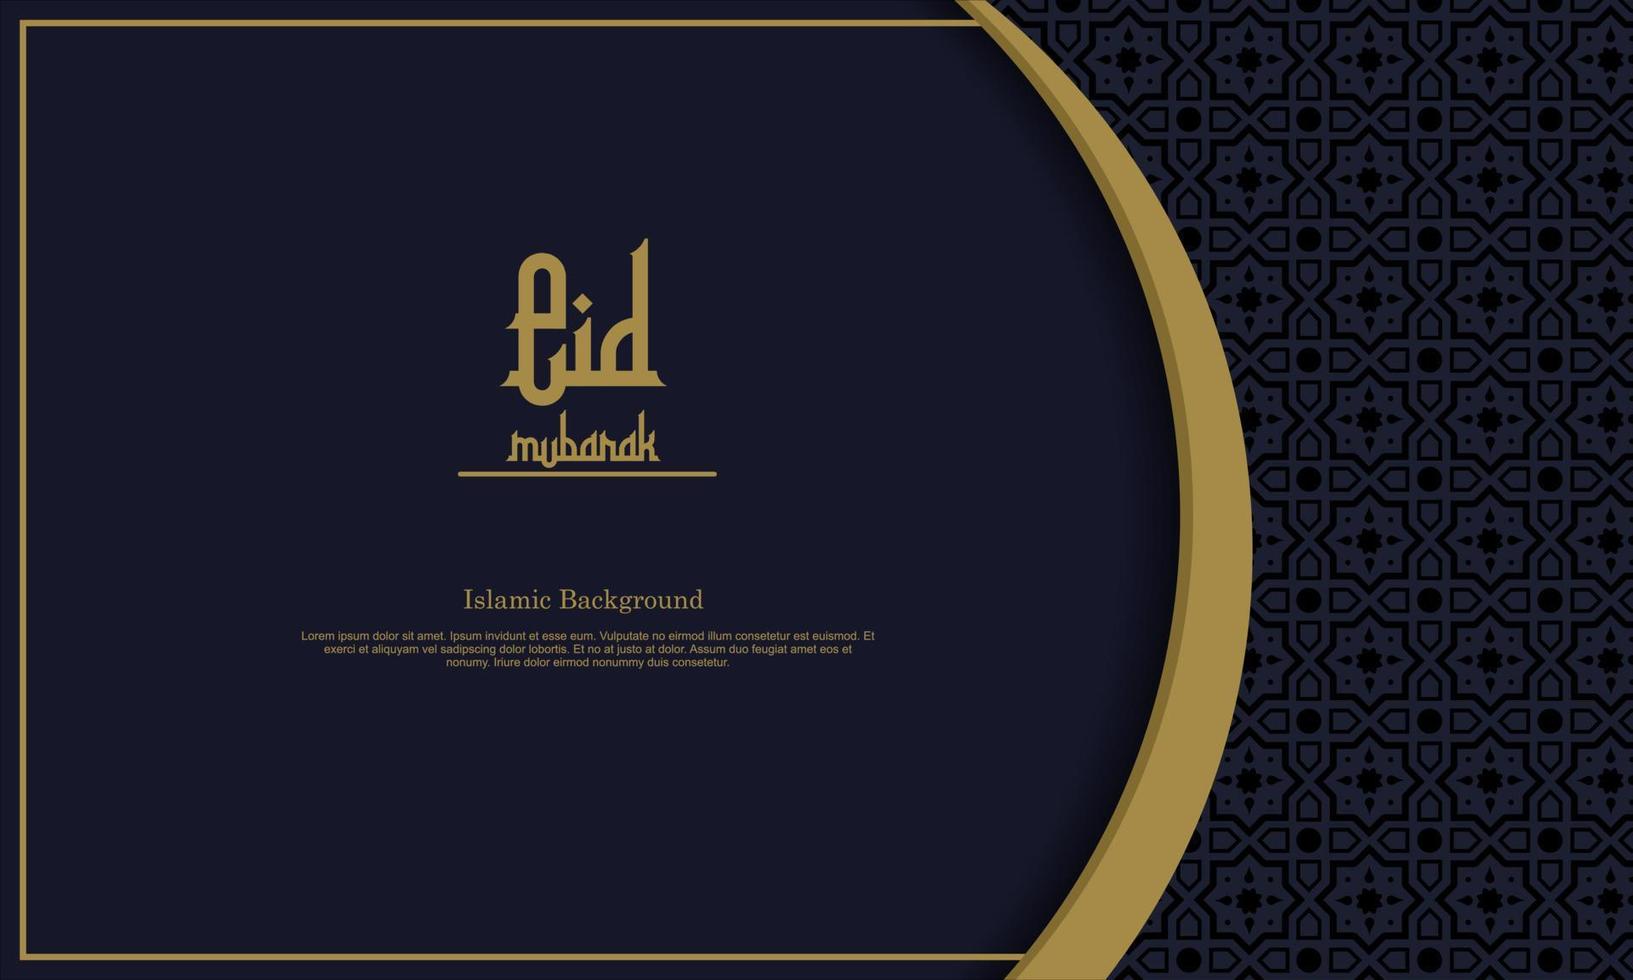 arabisk elegant lyx dekorativ islamisk bakgrund med islamiska mönster dekorativa prydnad premium vektor